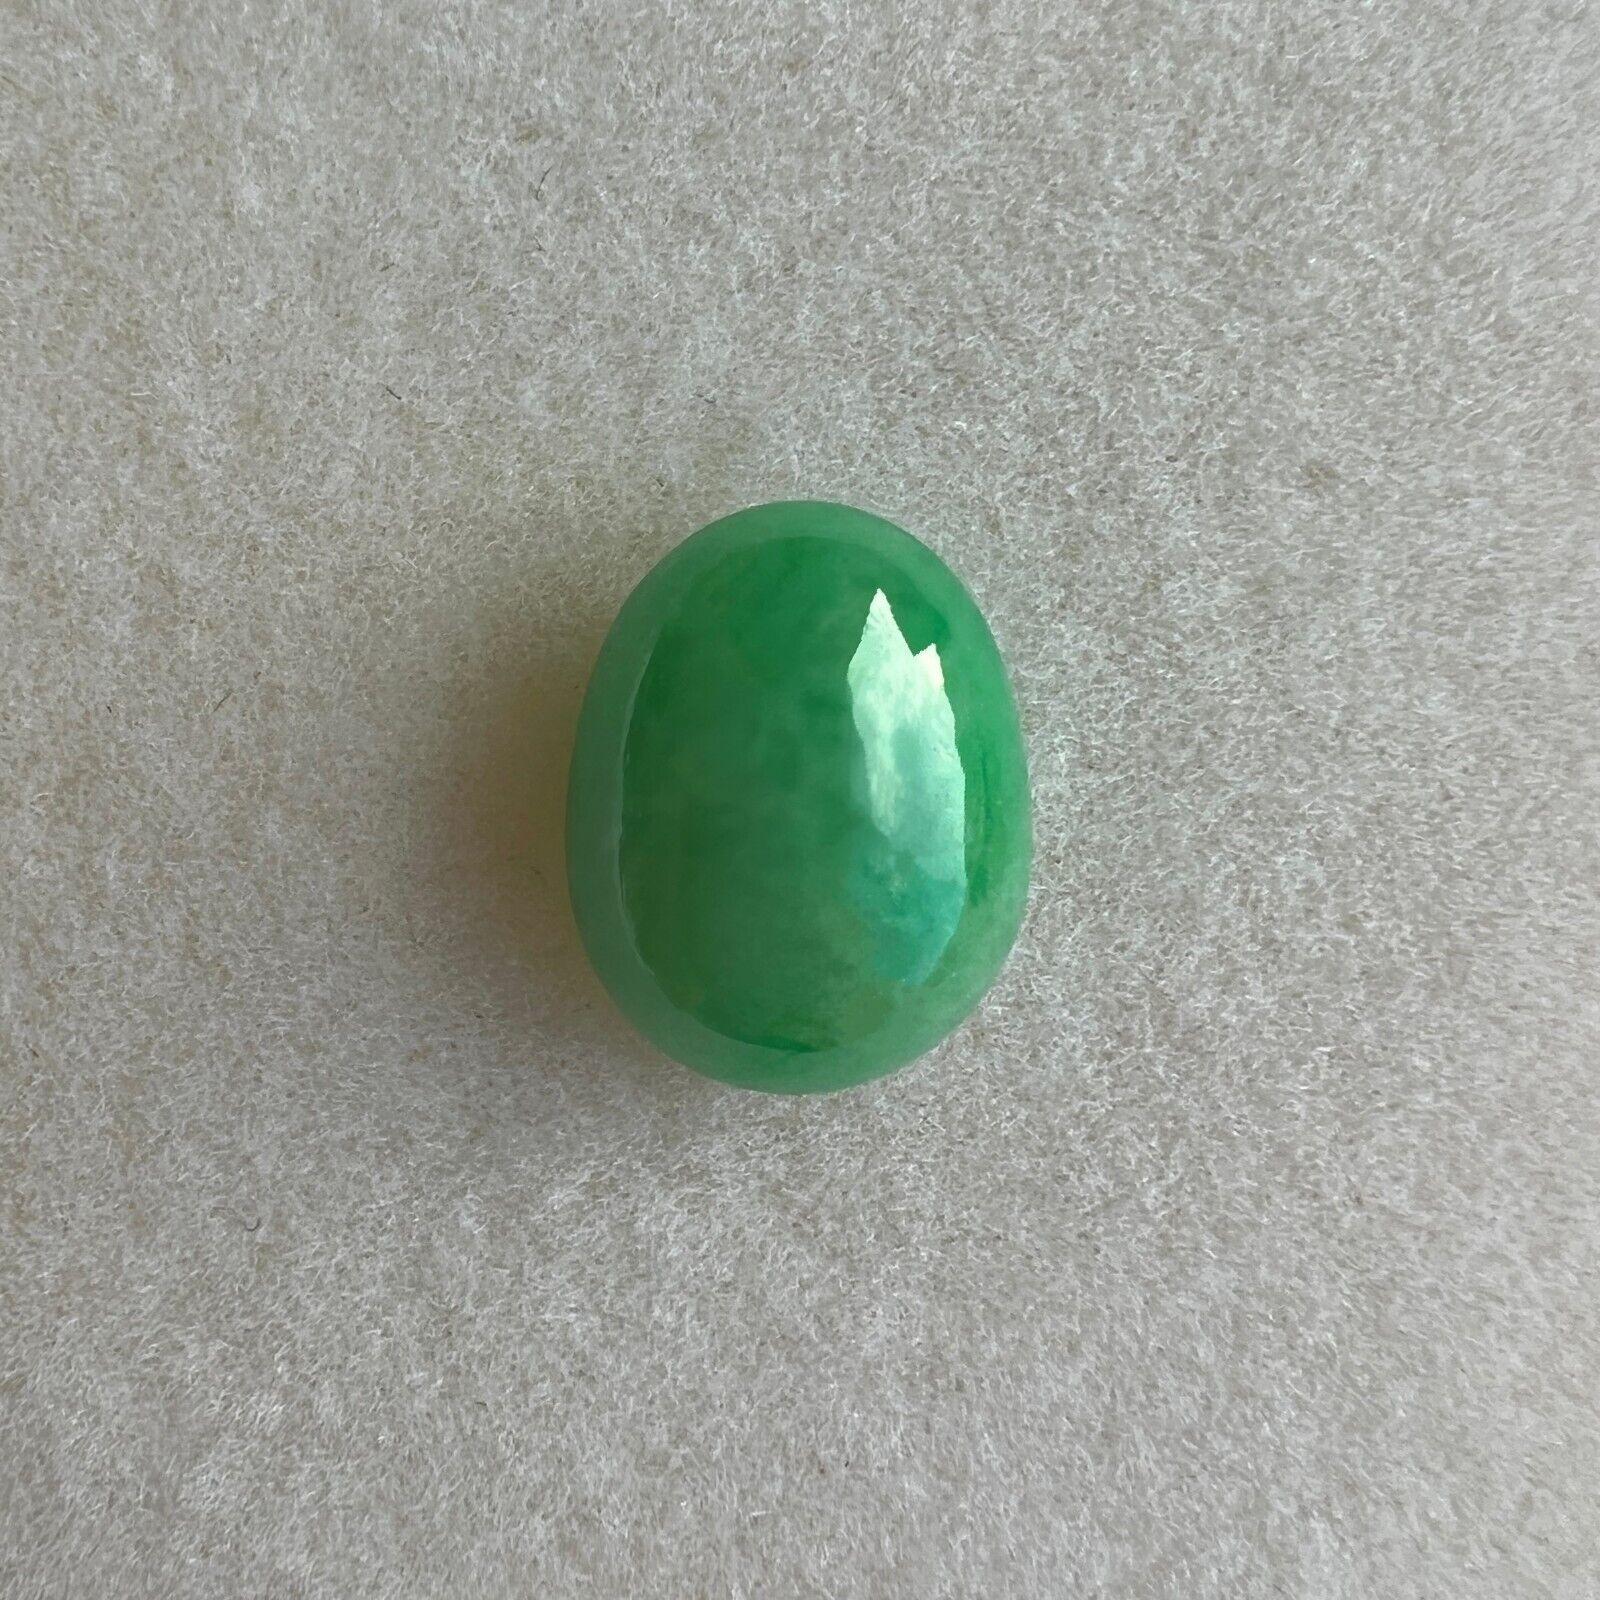 Taille ovale Rare 4.03ct IGI Certified Green Jadeite Jade 'A' Grade Oval Cabochon Loose Gem en vente